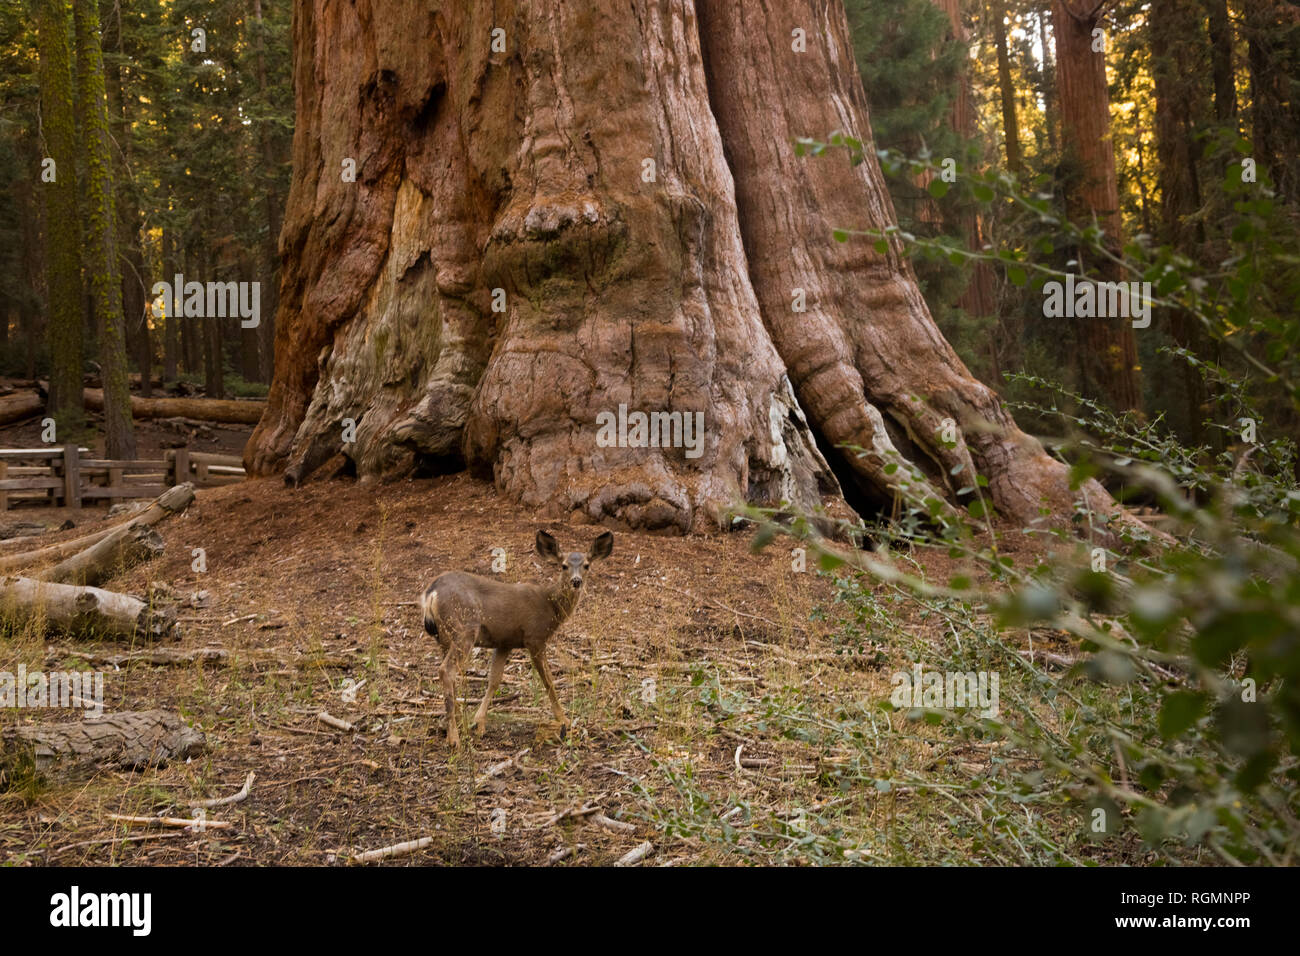 USA, California, Death Valley, General Sherman Tree, giant sequoia, Sequoiadendron giganteum Stock Photo